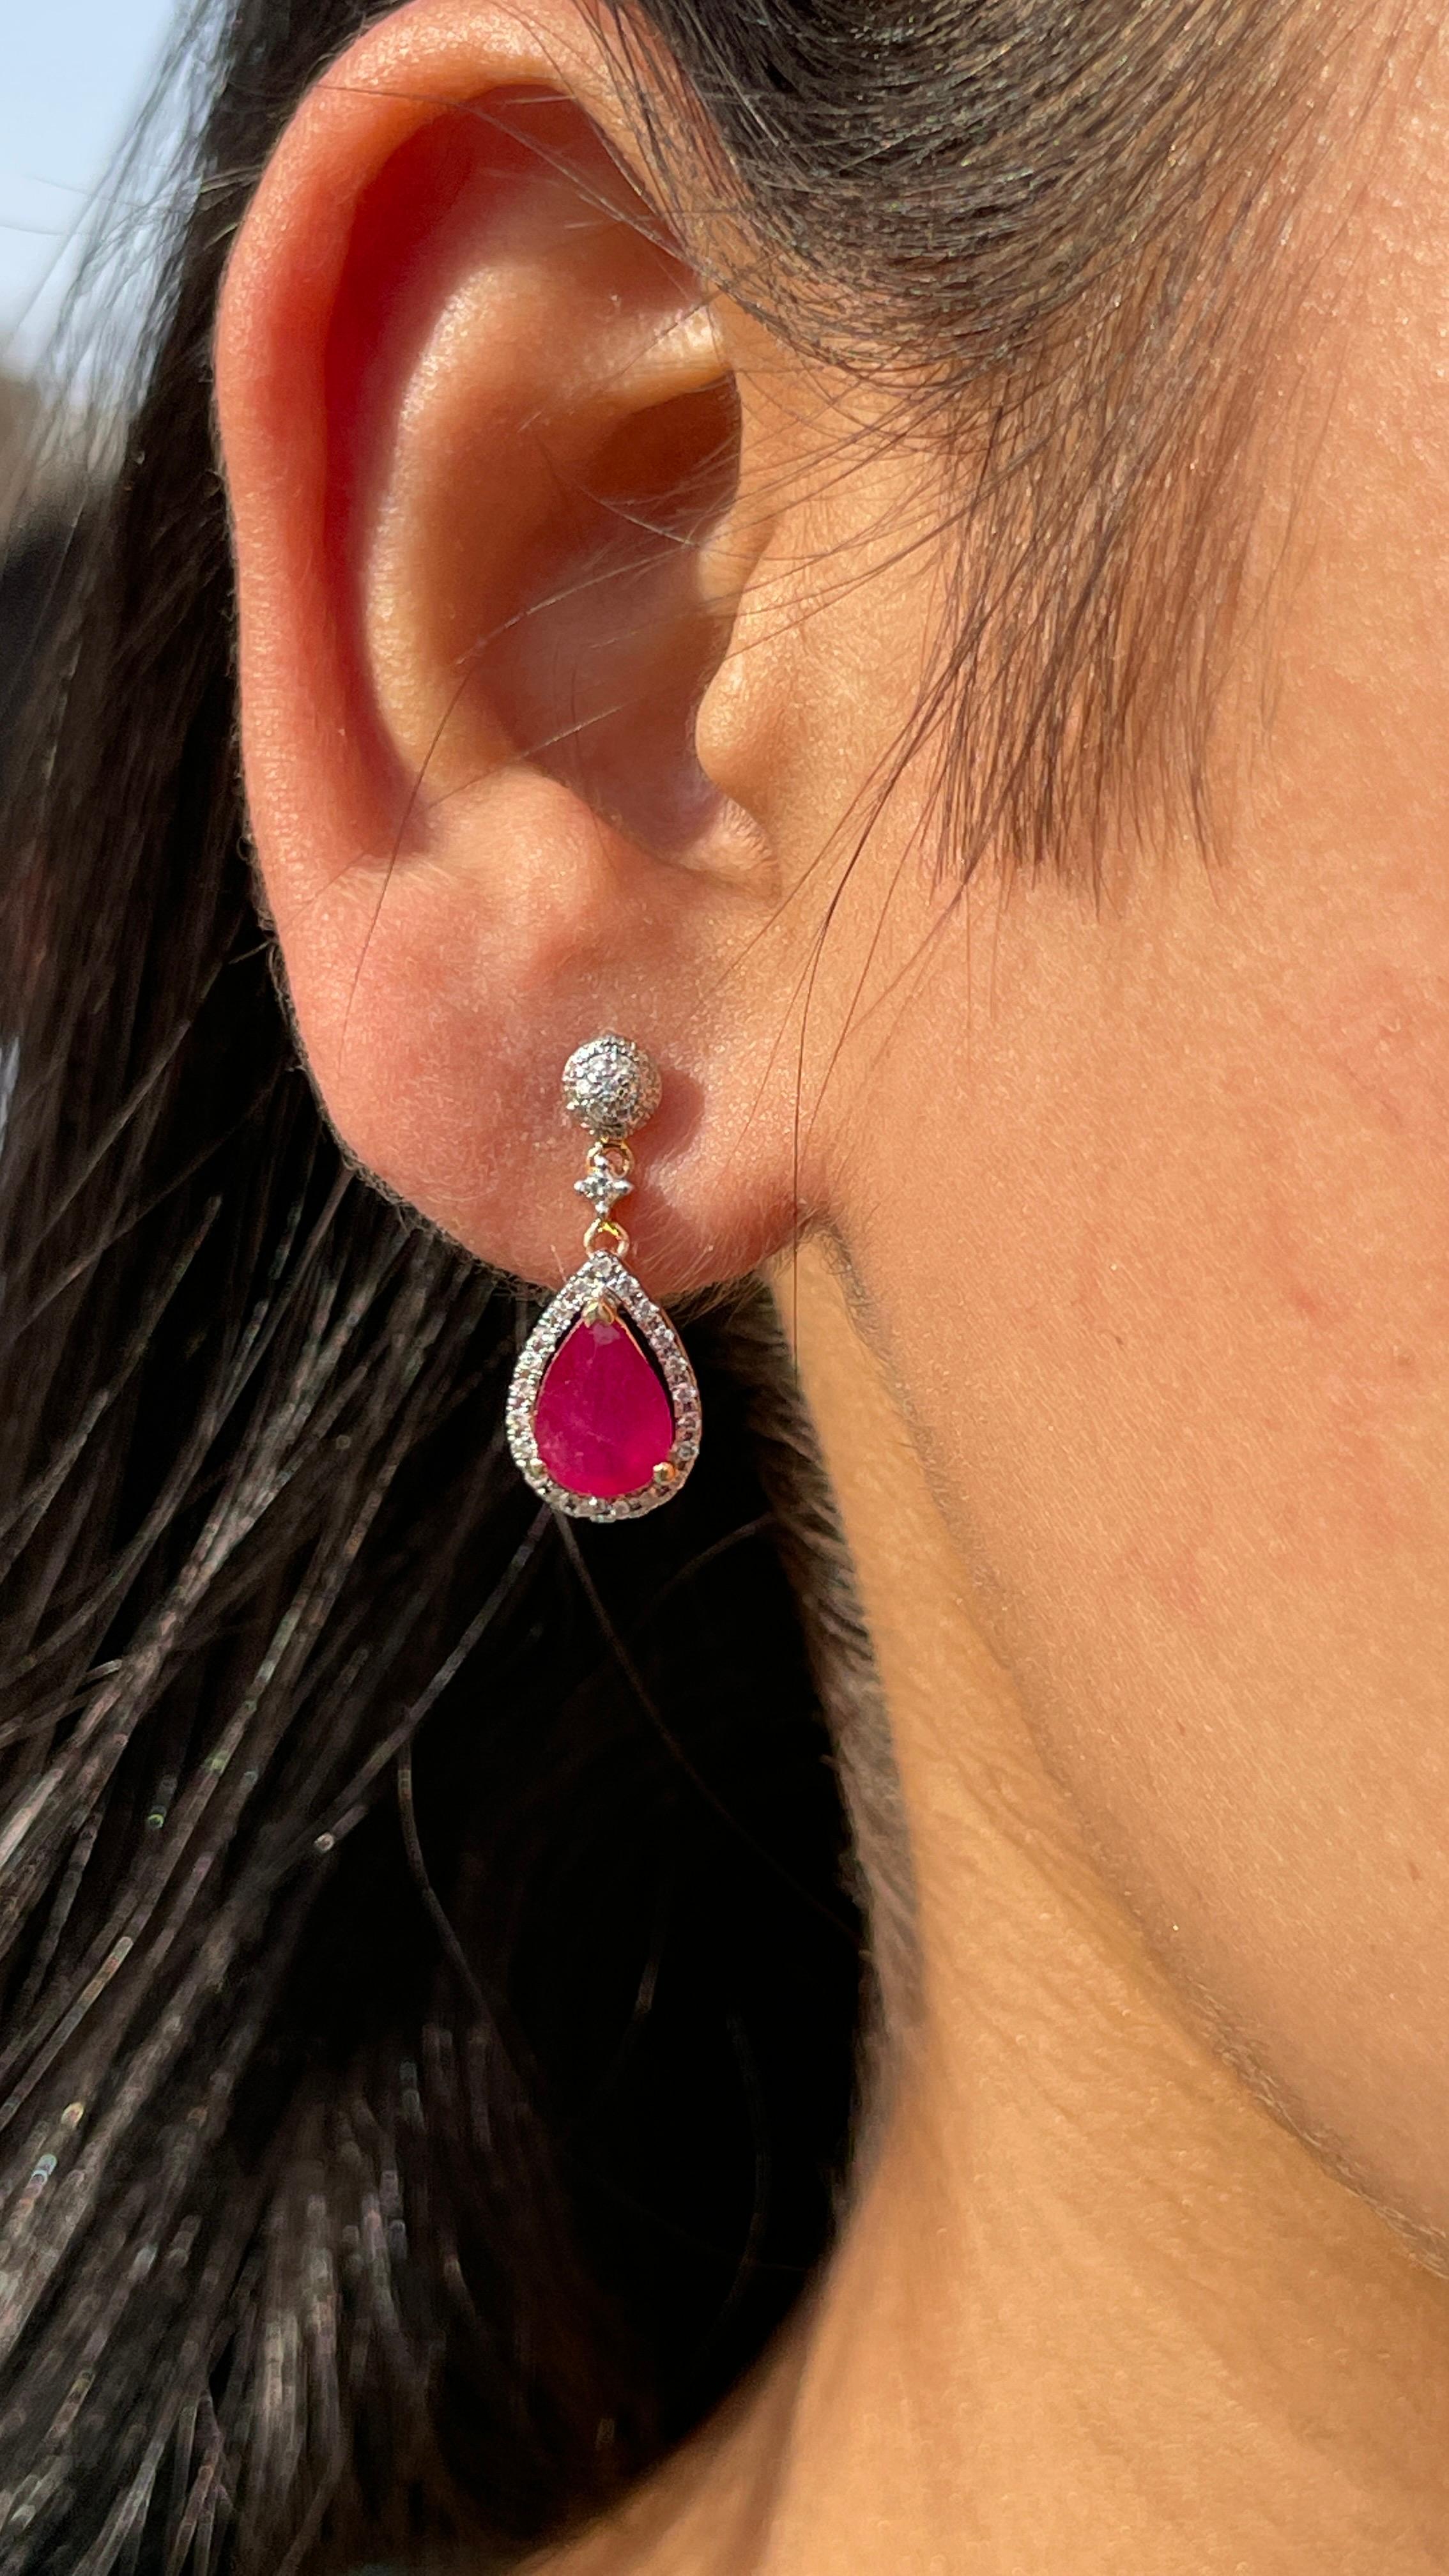 Rubin-Ohrringe und Ohrhänger mit Diamanten, die Ihren Look unterstreichen. Diese Ohrringe mit einem Edelstein im Birnenschliff sorgen für einen funkelnden, luxuriösen Look.
Wenn Sie sich für einzigartige Stile begeistern, ist dieses Schmuckstück